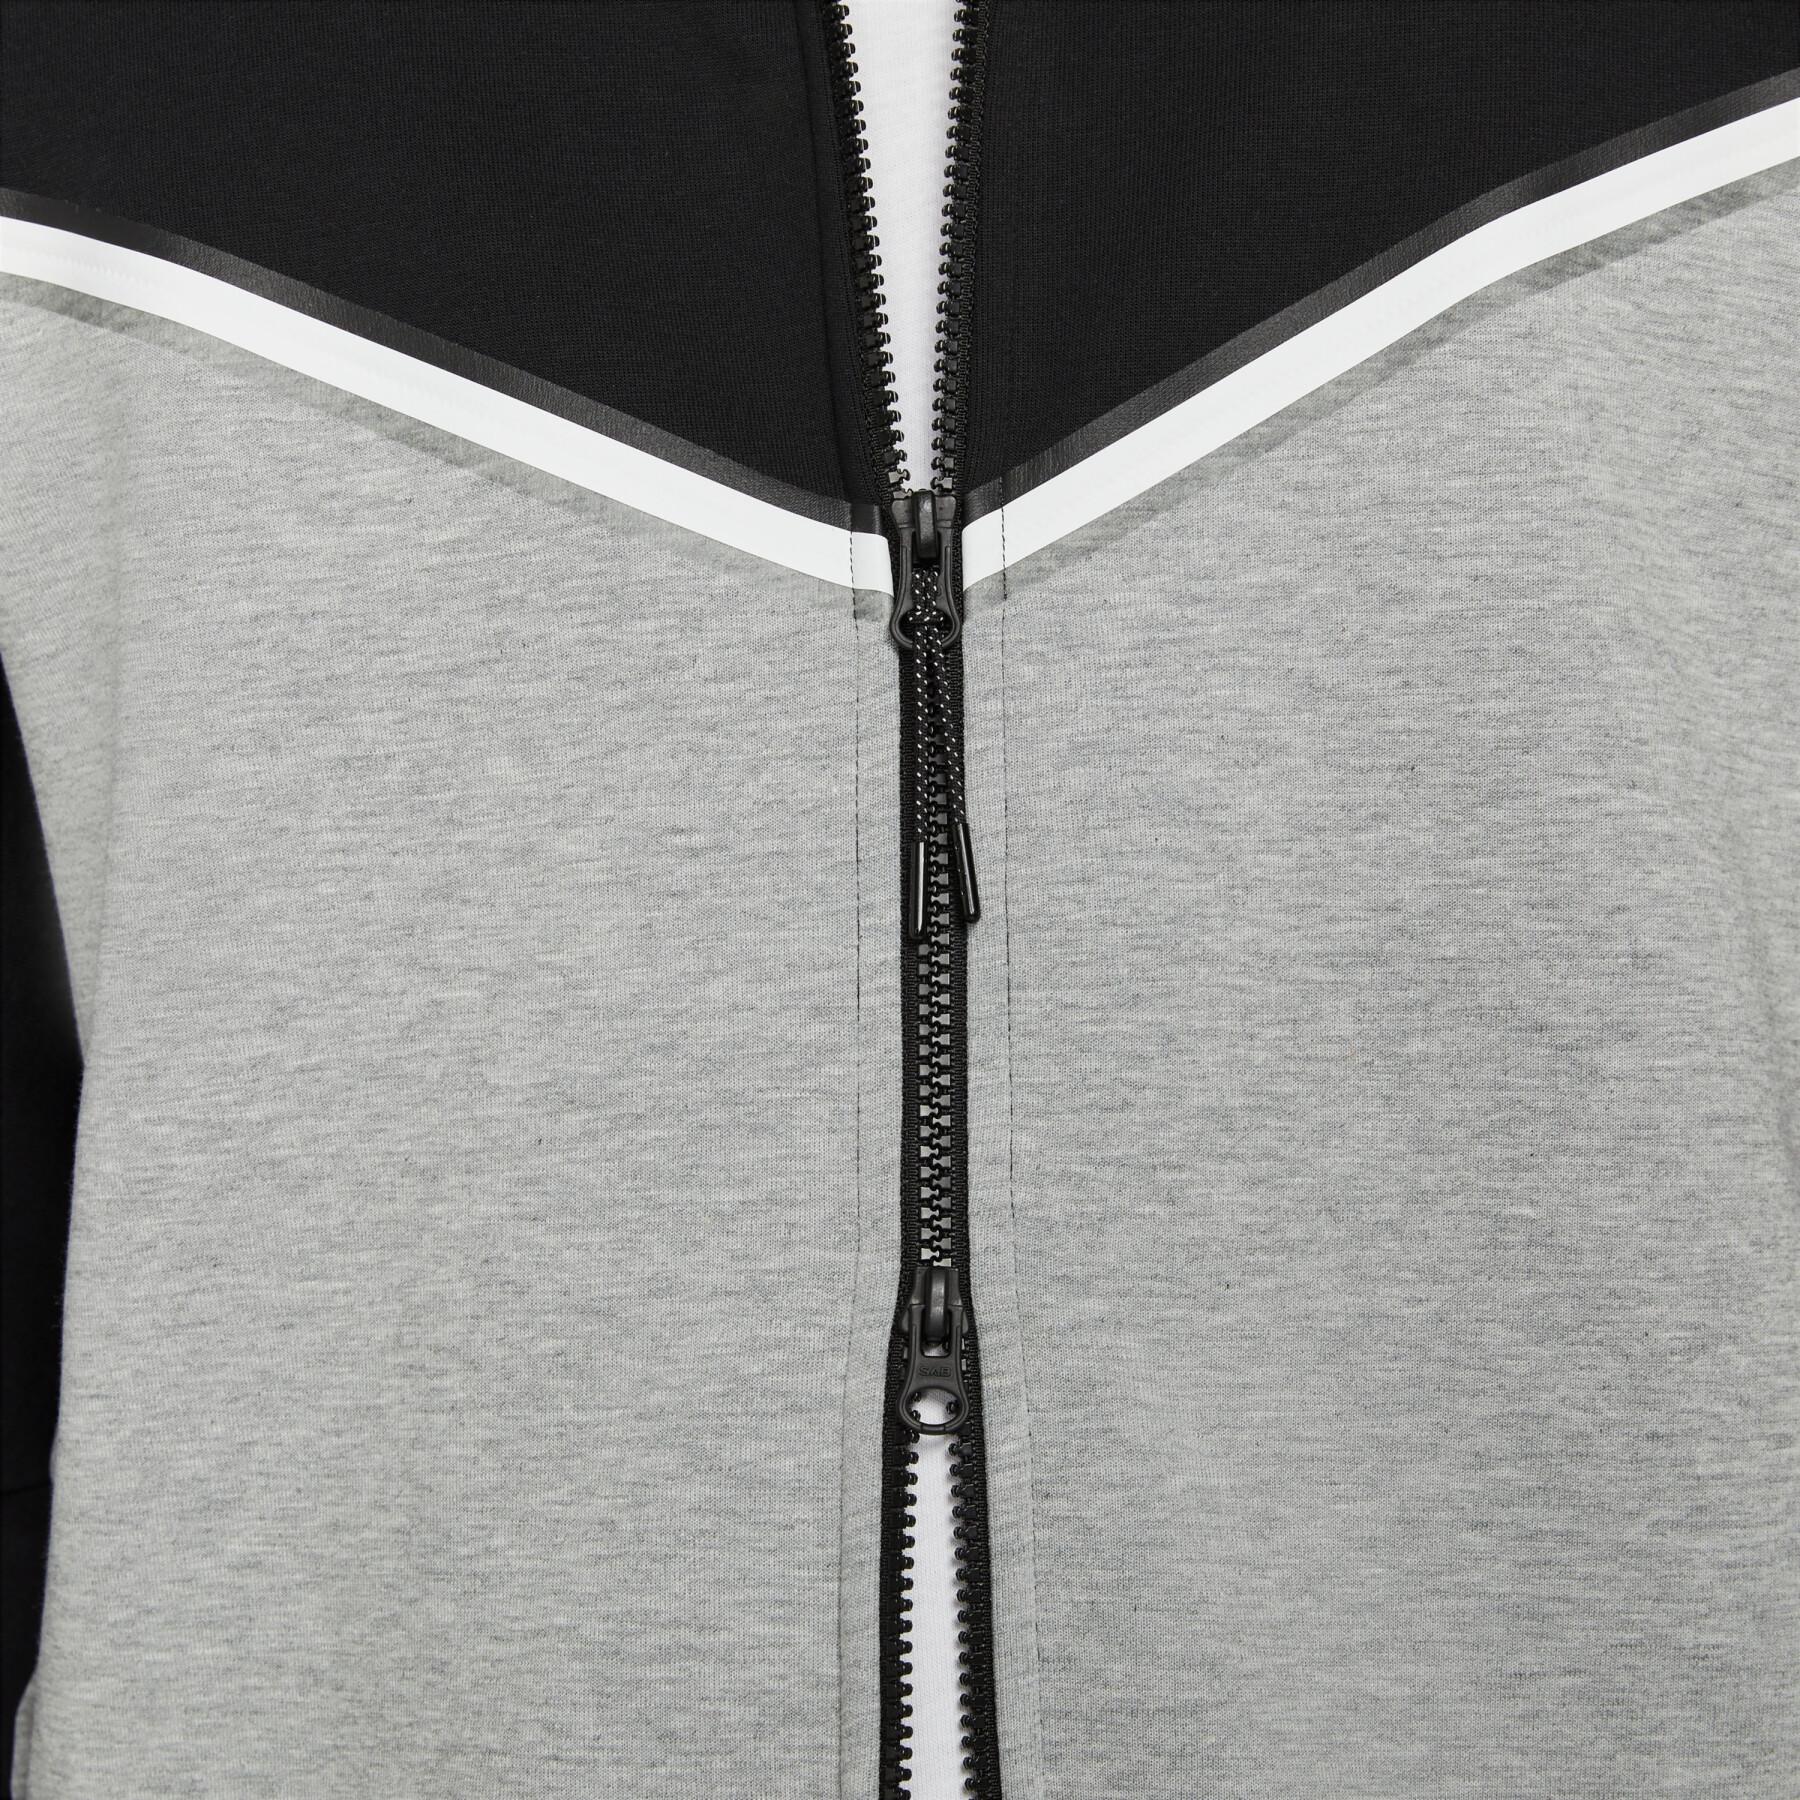 Hooded sweatshirt Nike sportswear tech fleece